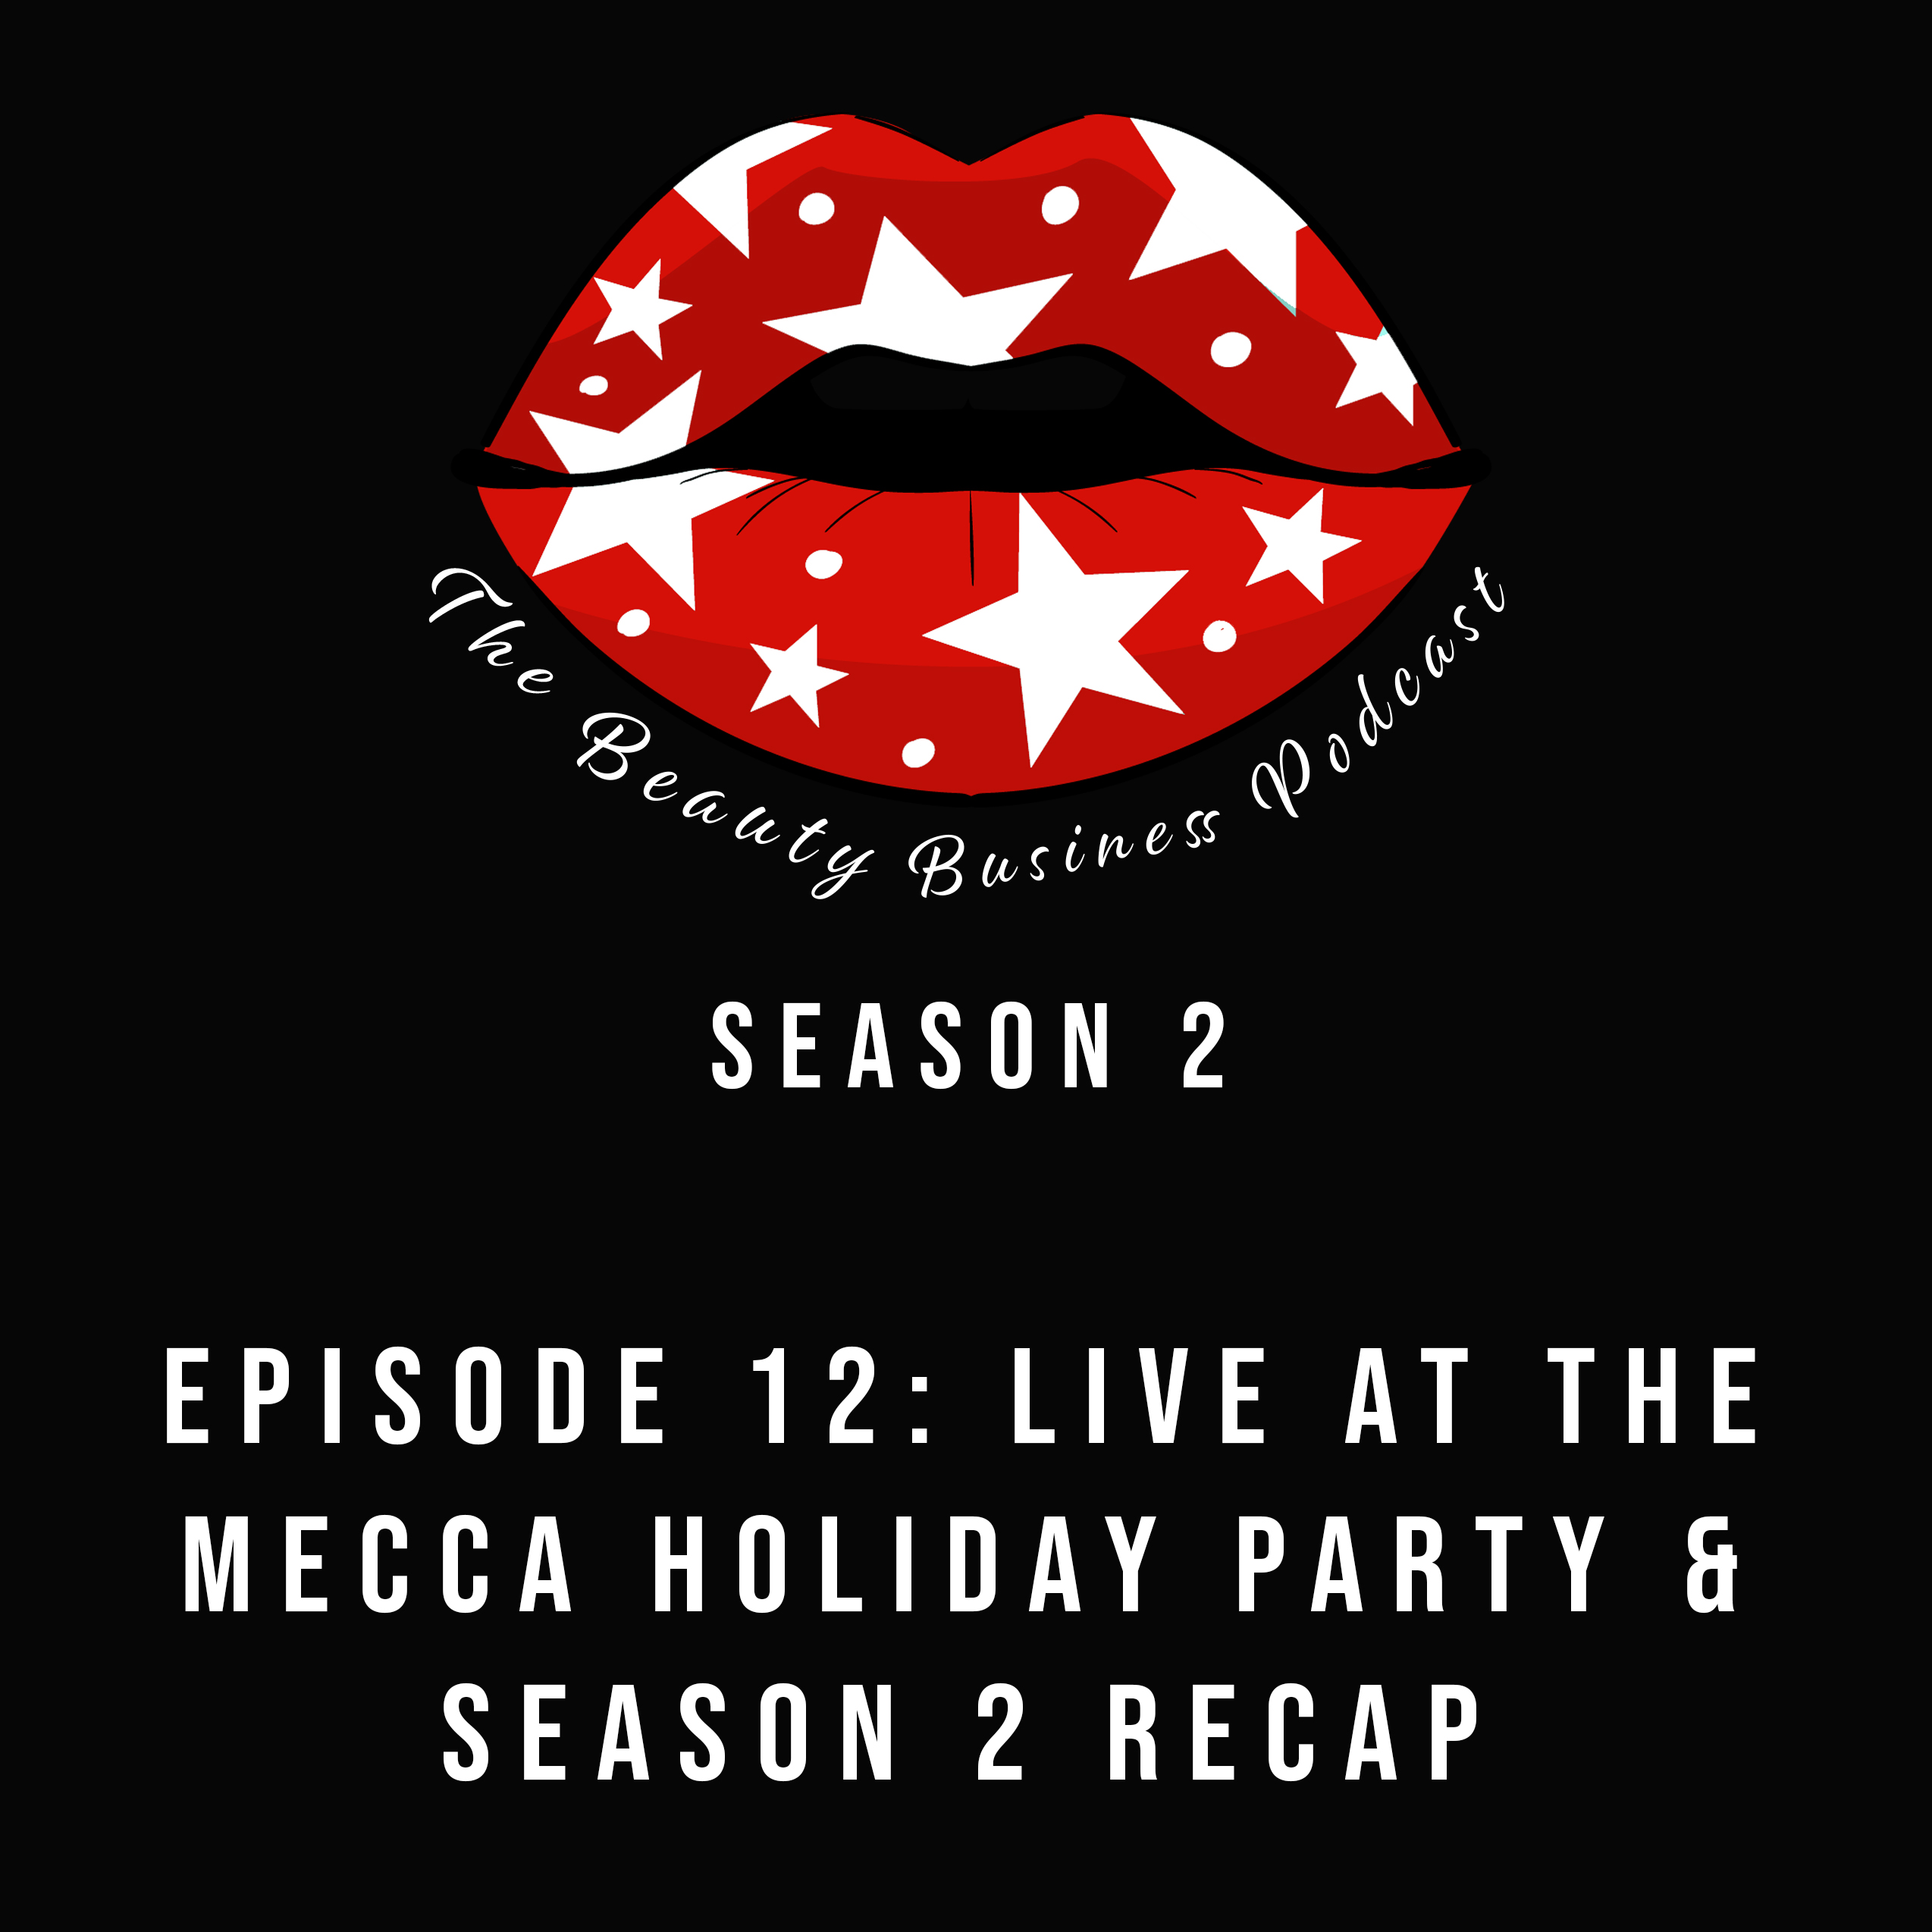 Season 2: Episode 12 - Mecca Holiday Party & Season 2 Recap